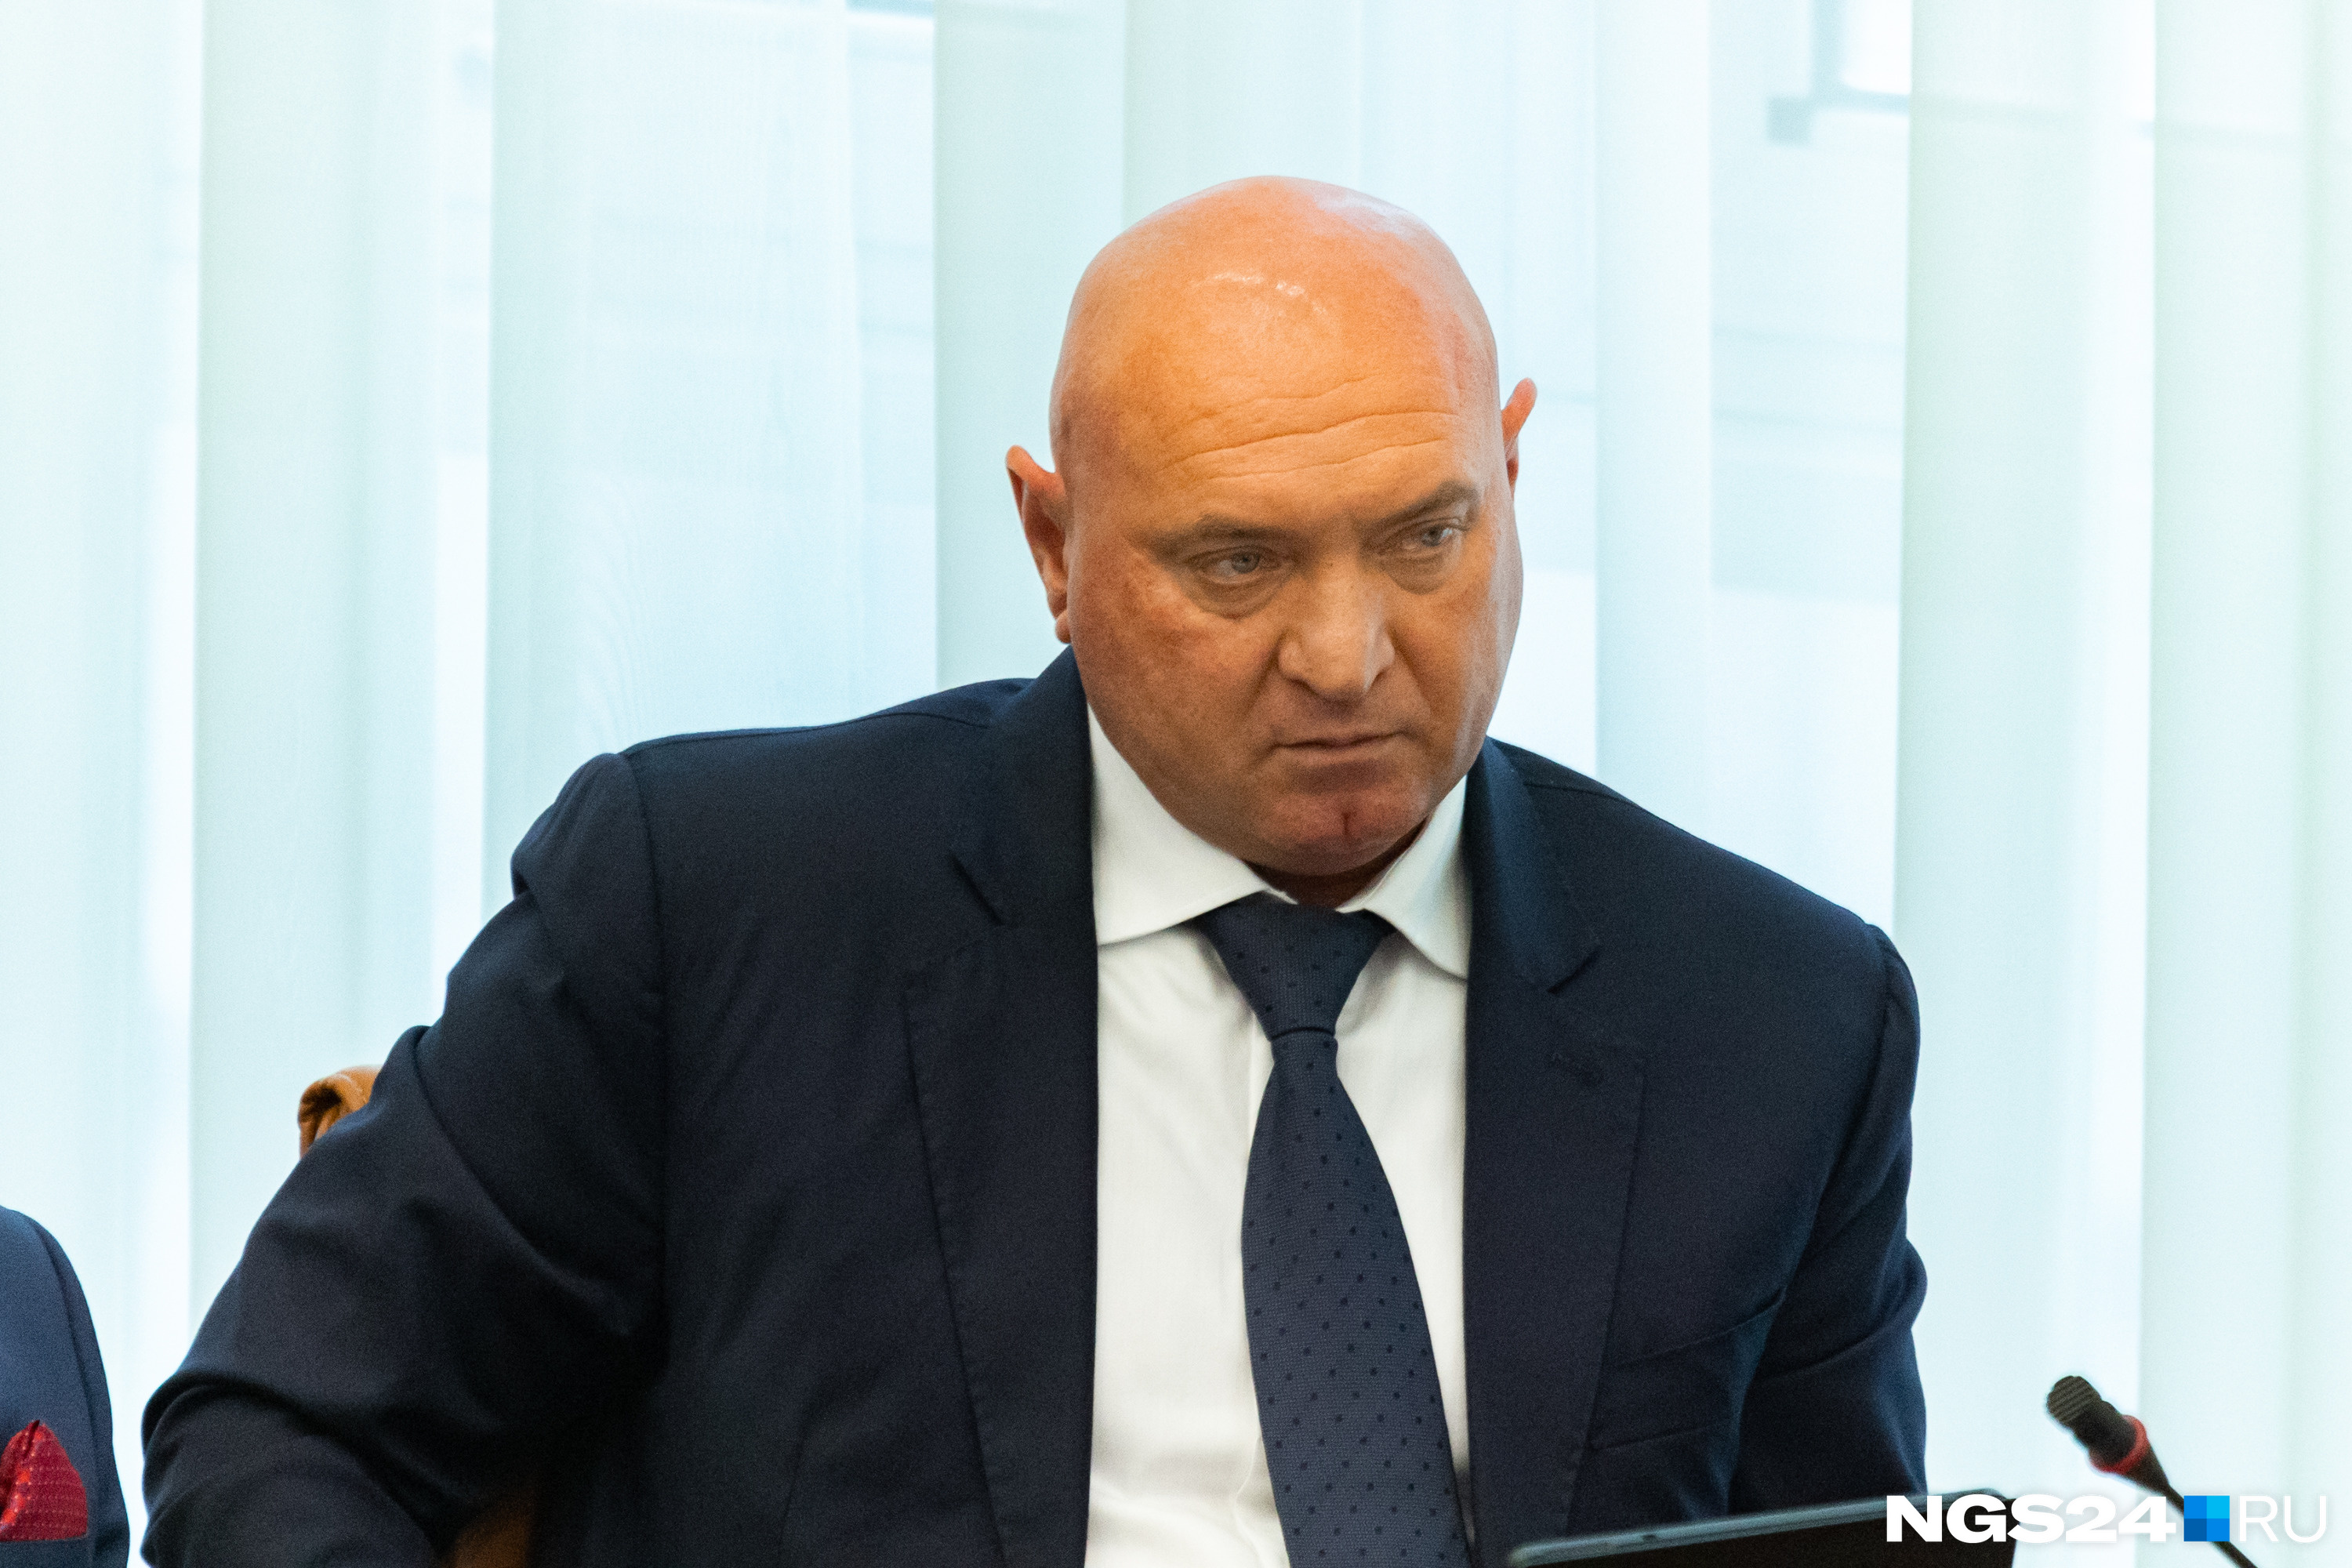 Натарову пришлось вернуться из депутатов Госдумы в краевые депутаты — в этот раз в главный парламент страны он не прошел